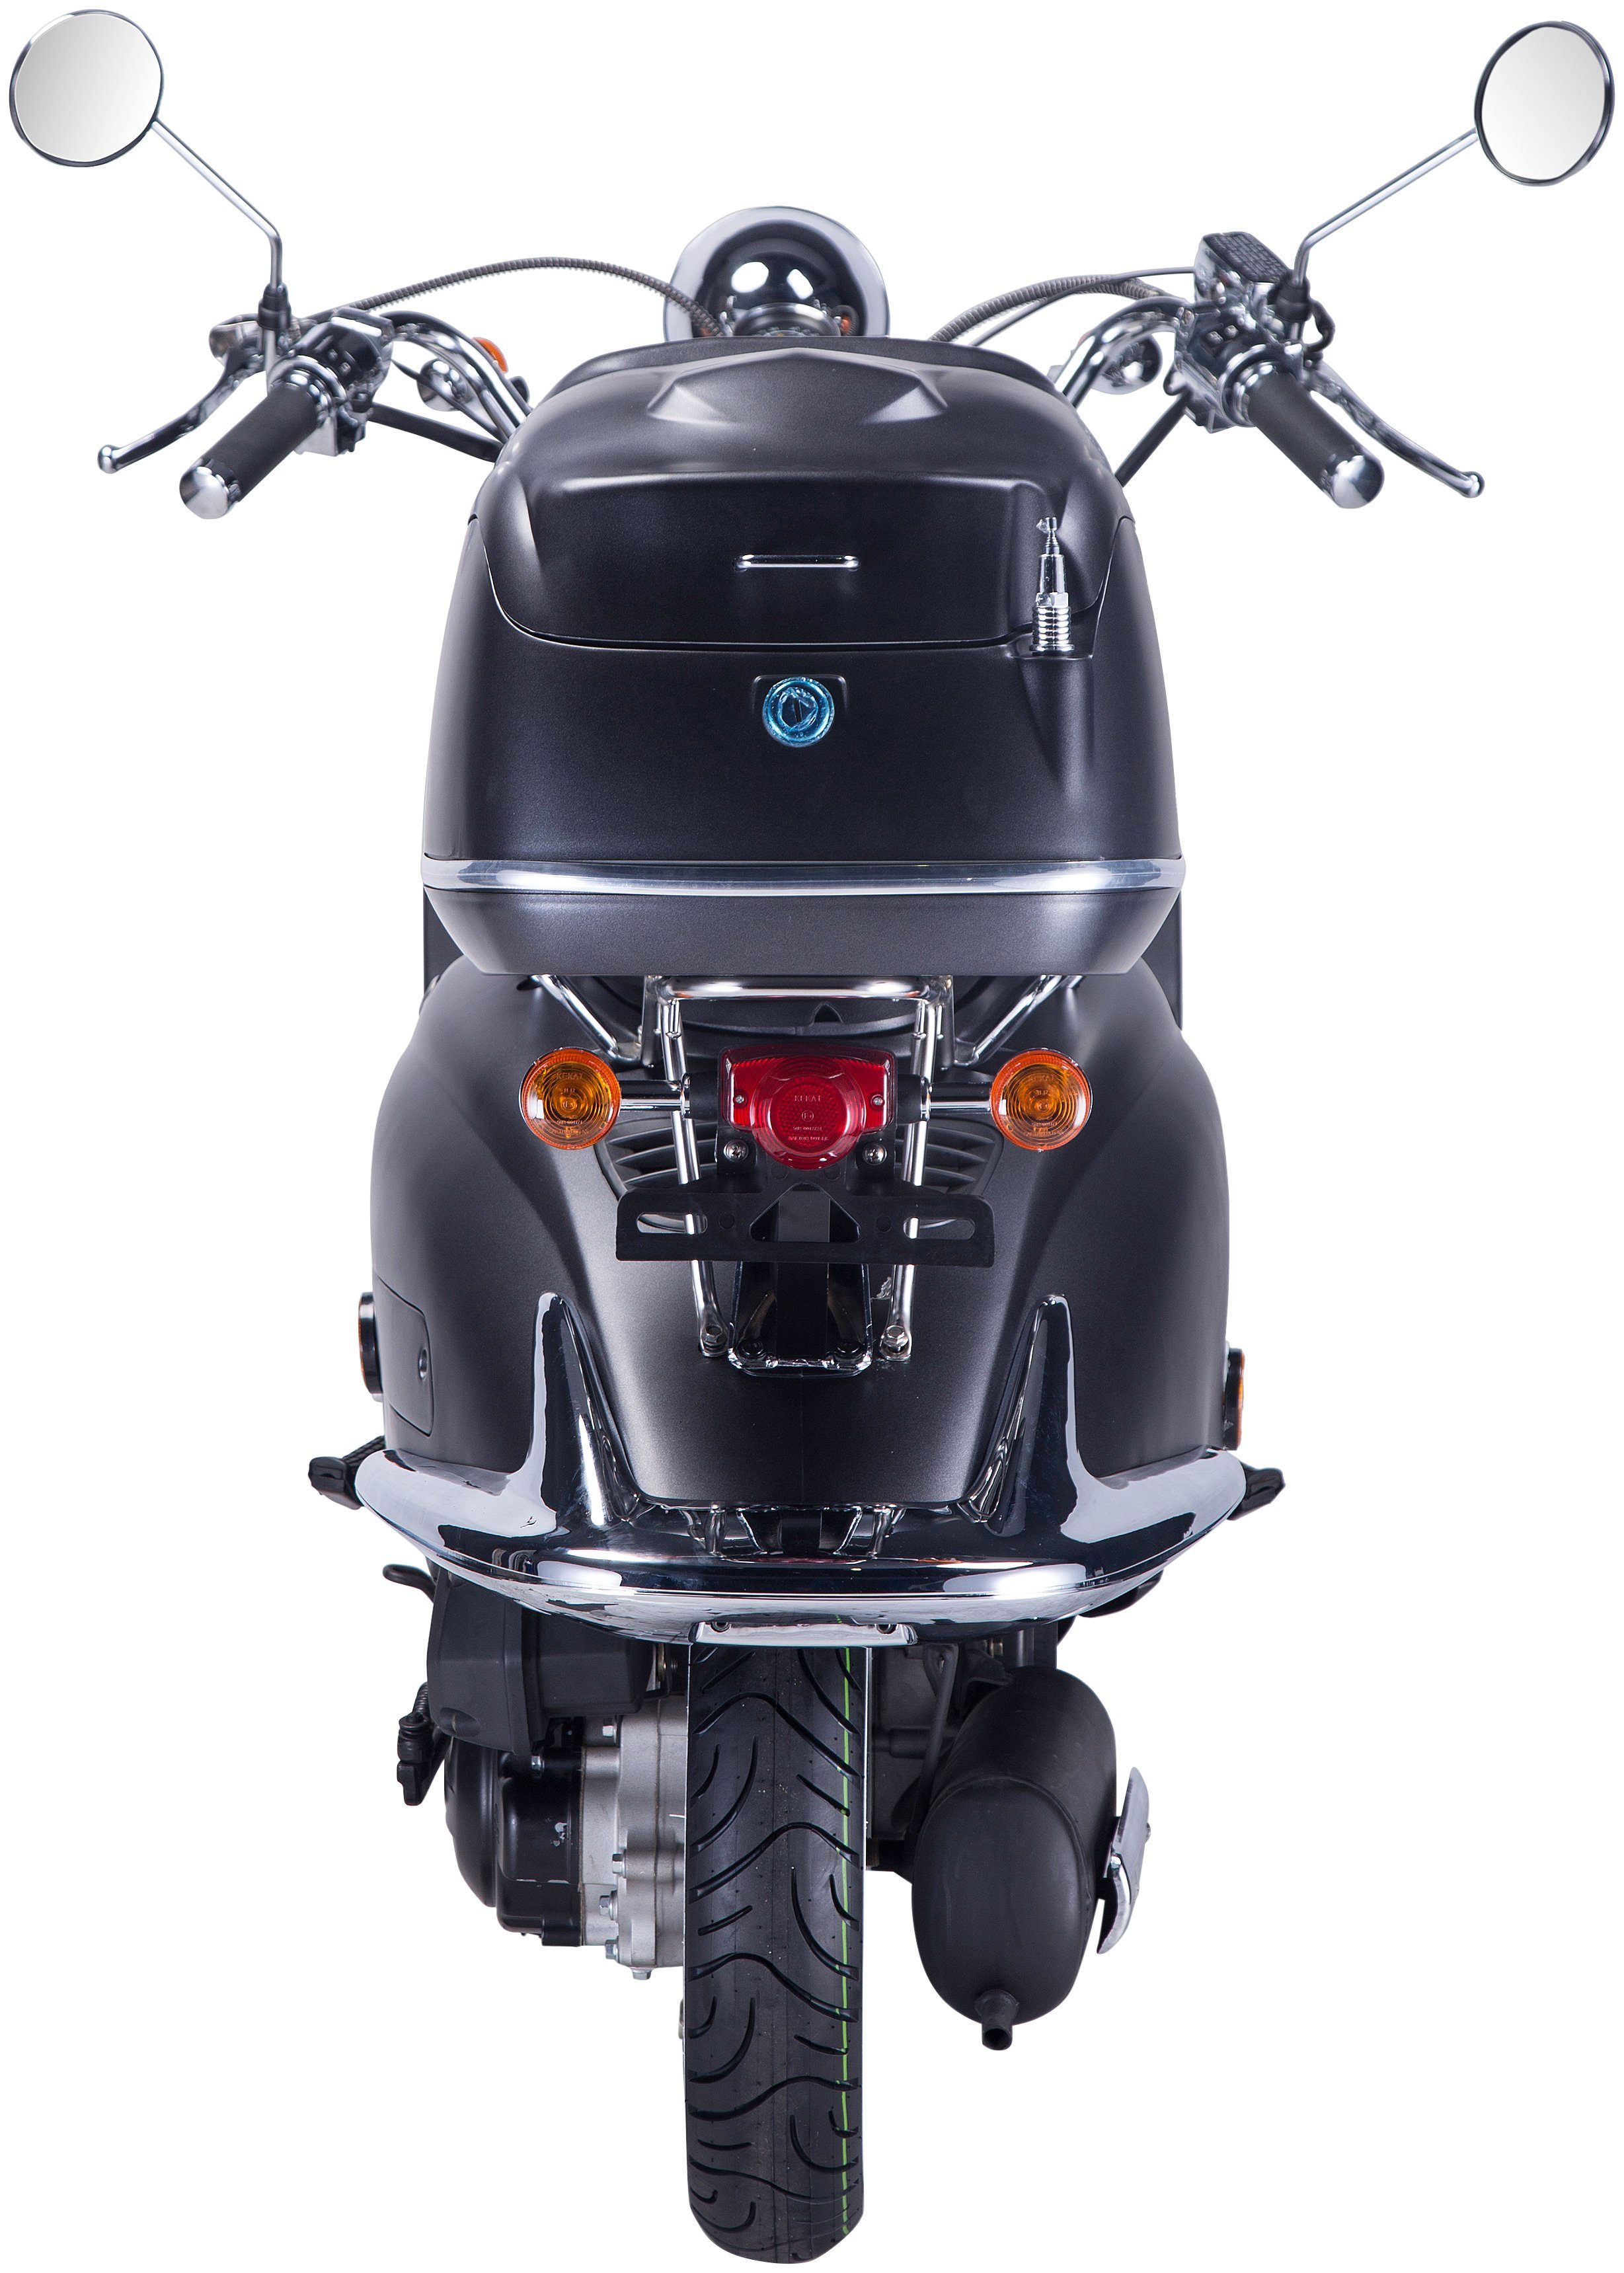 GT UNION Motorroller Strada, 50 ccm, km/h, Topcase 45 5, schwarz/silberfarben (Set), mit Euro